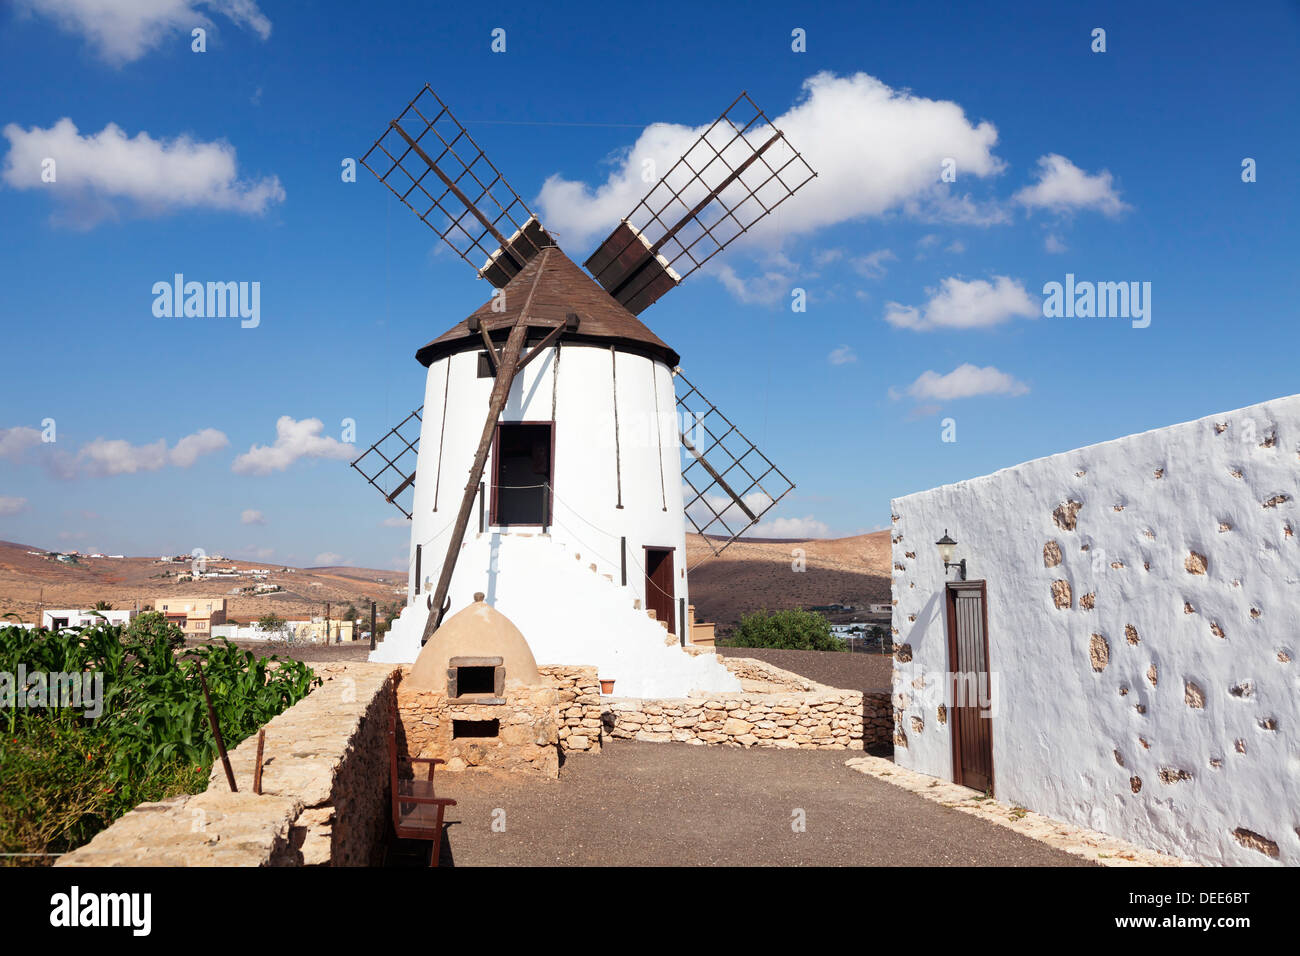 Windmill museum (Centro de Interpretacion de los Molinos), Tiscamanita, Fuerteventura, Canary Islands, Spain, Europe Stock Photo